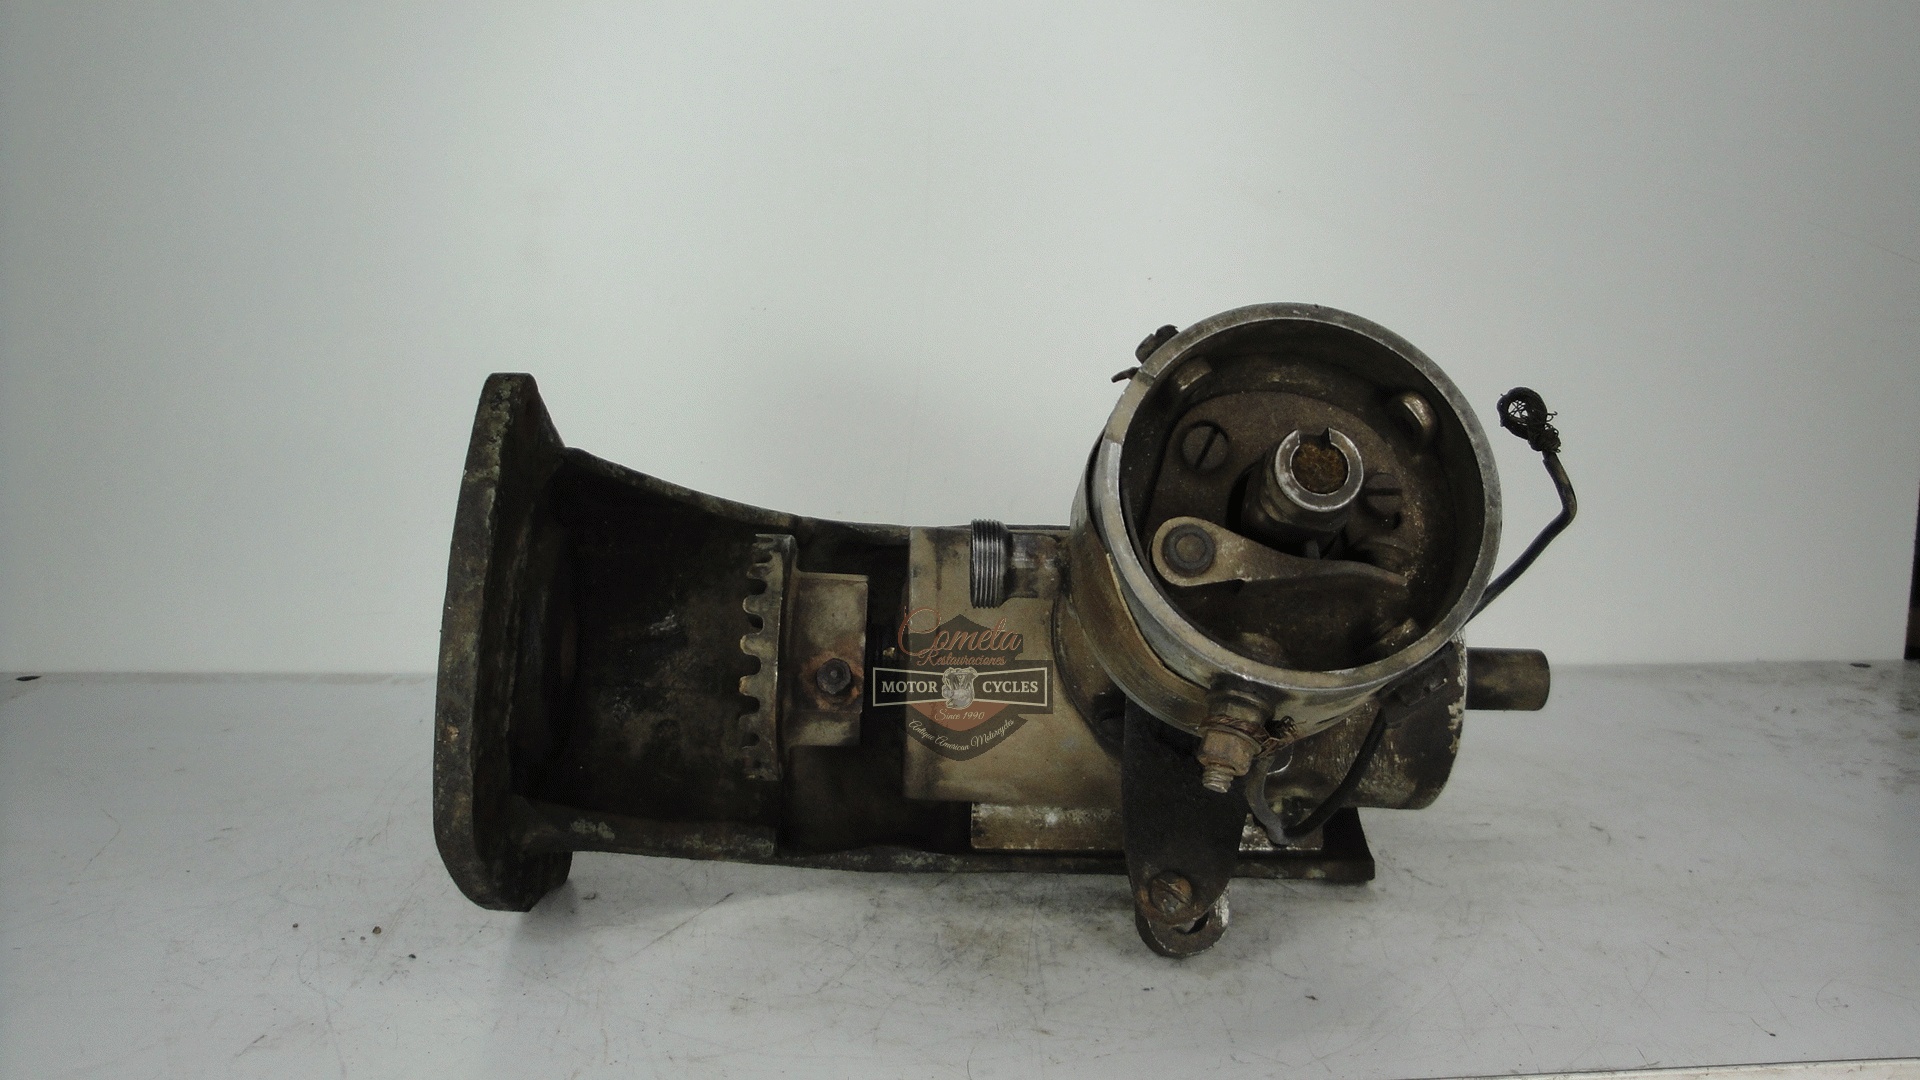 ADAPTADOR DE DELCO / BRACKET  PARA ENGINES  4 CYLINDERS AÑOS 1910 / 1920 / 1930  